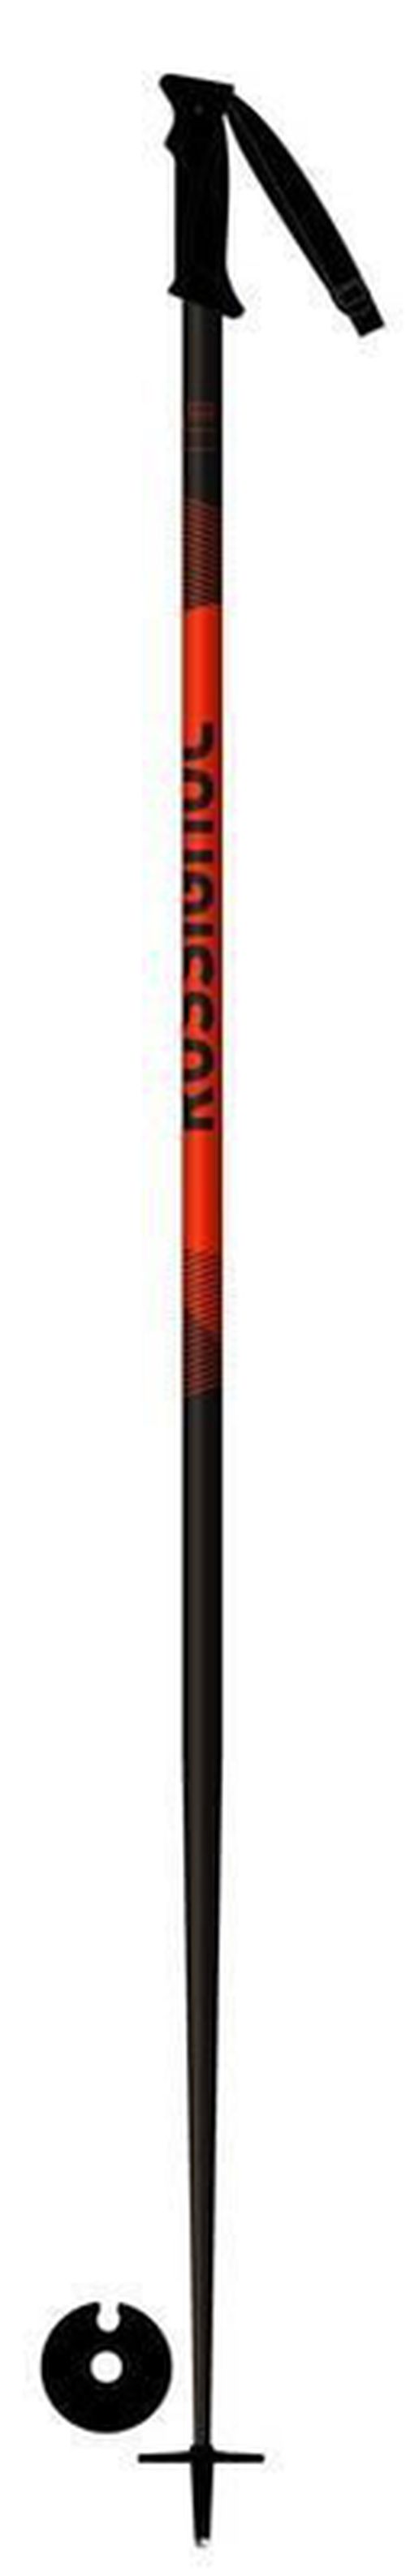 купить Лыжные палки Rossignol TACTIC BLACK/RED 120 в Кишинёве 